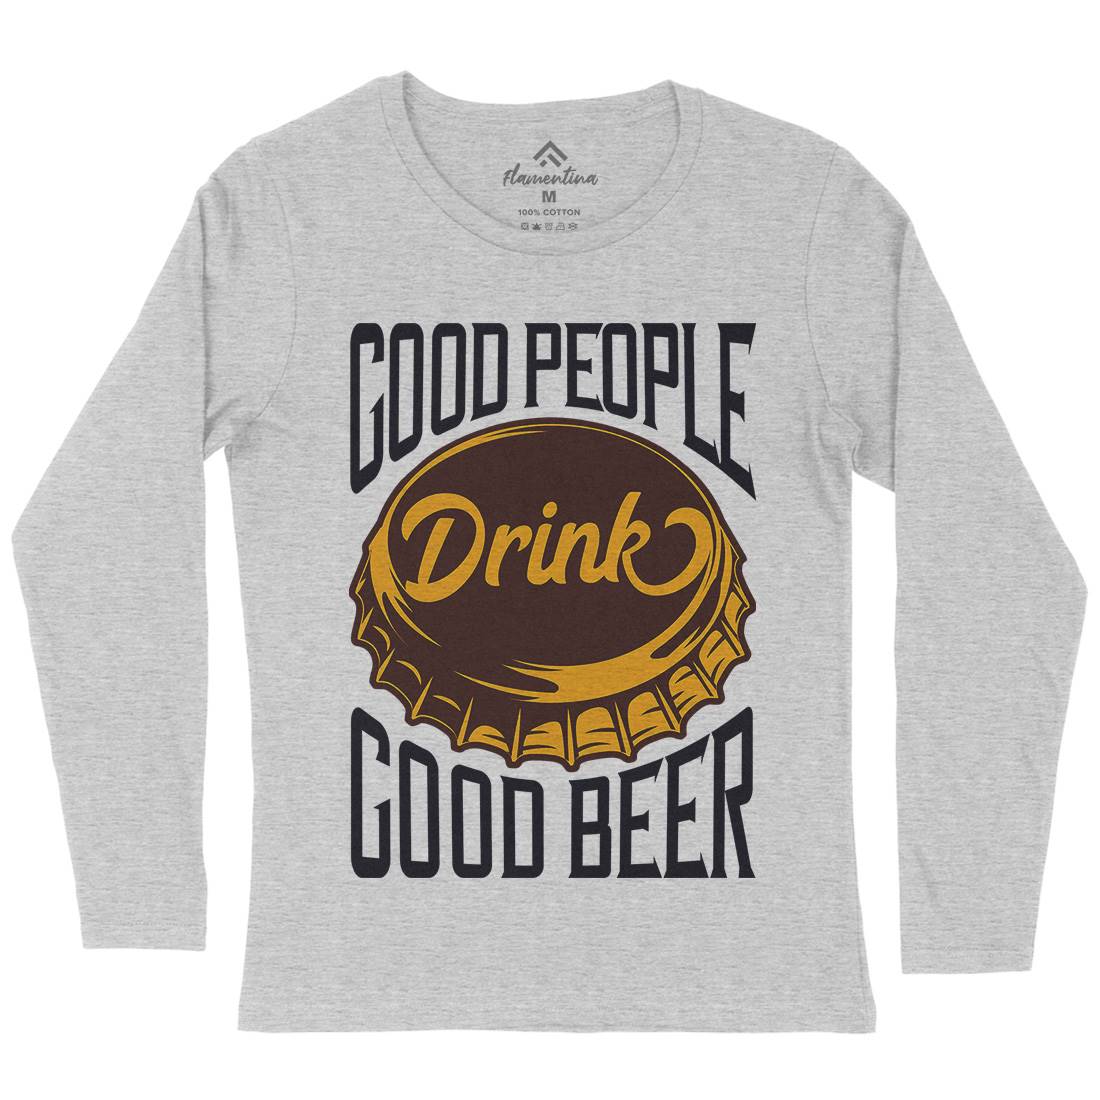 Good People Drink Beer Womens Long Sleeve T-Shirt Drinks B287